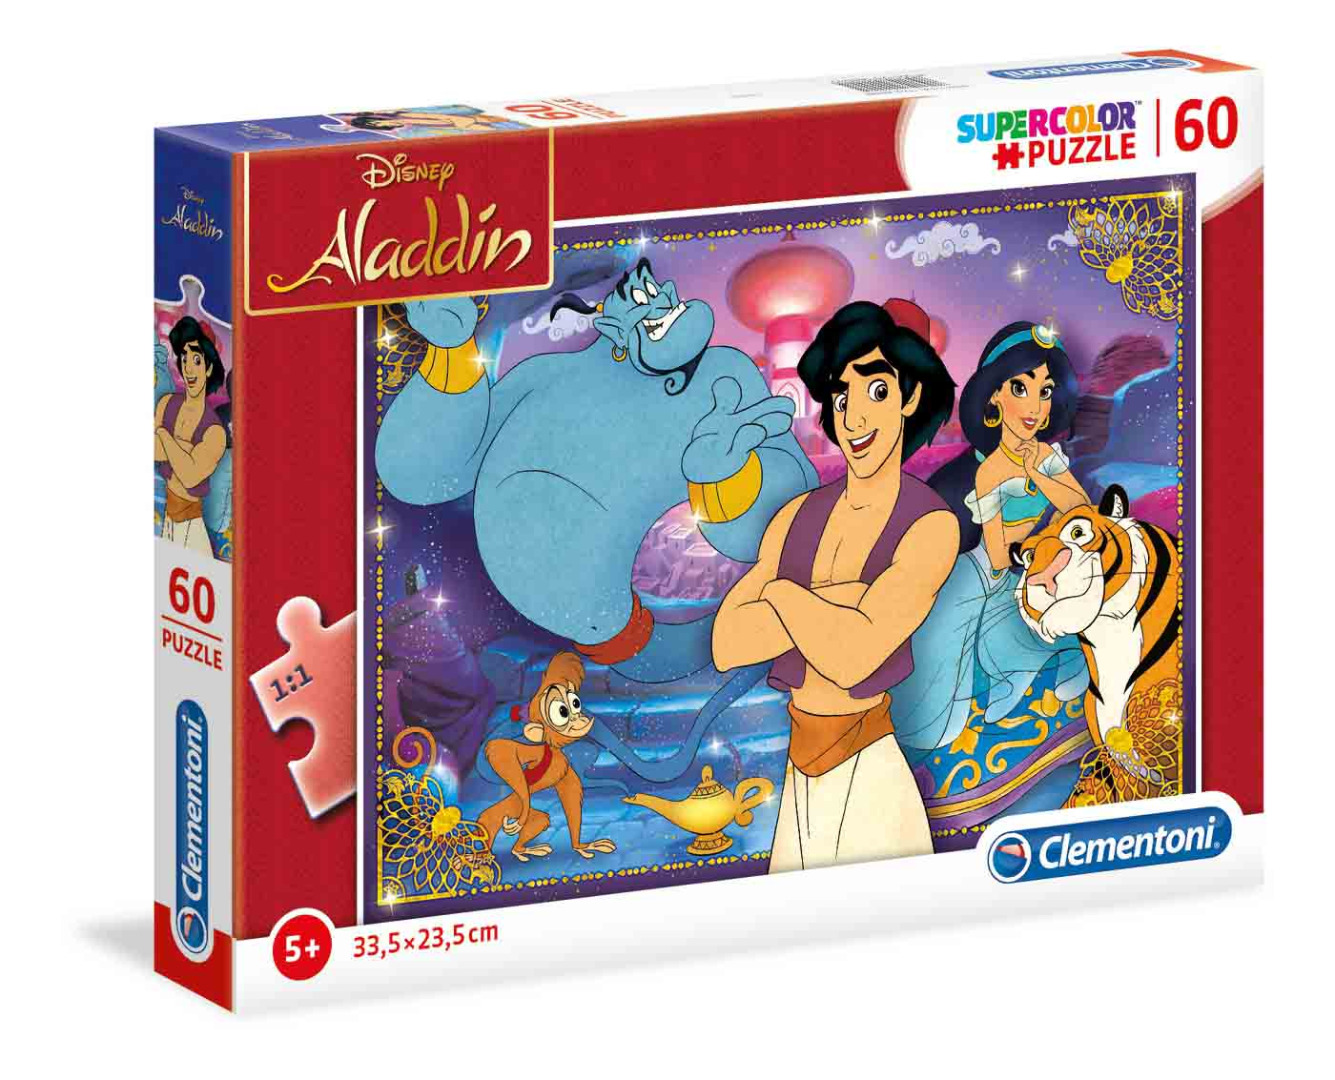 Disney Aladdin - 60 peças - Supercolor Puzzle (Para mais de 5 anos)